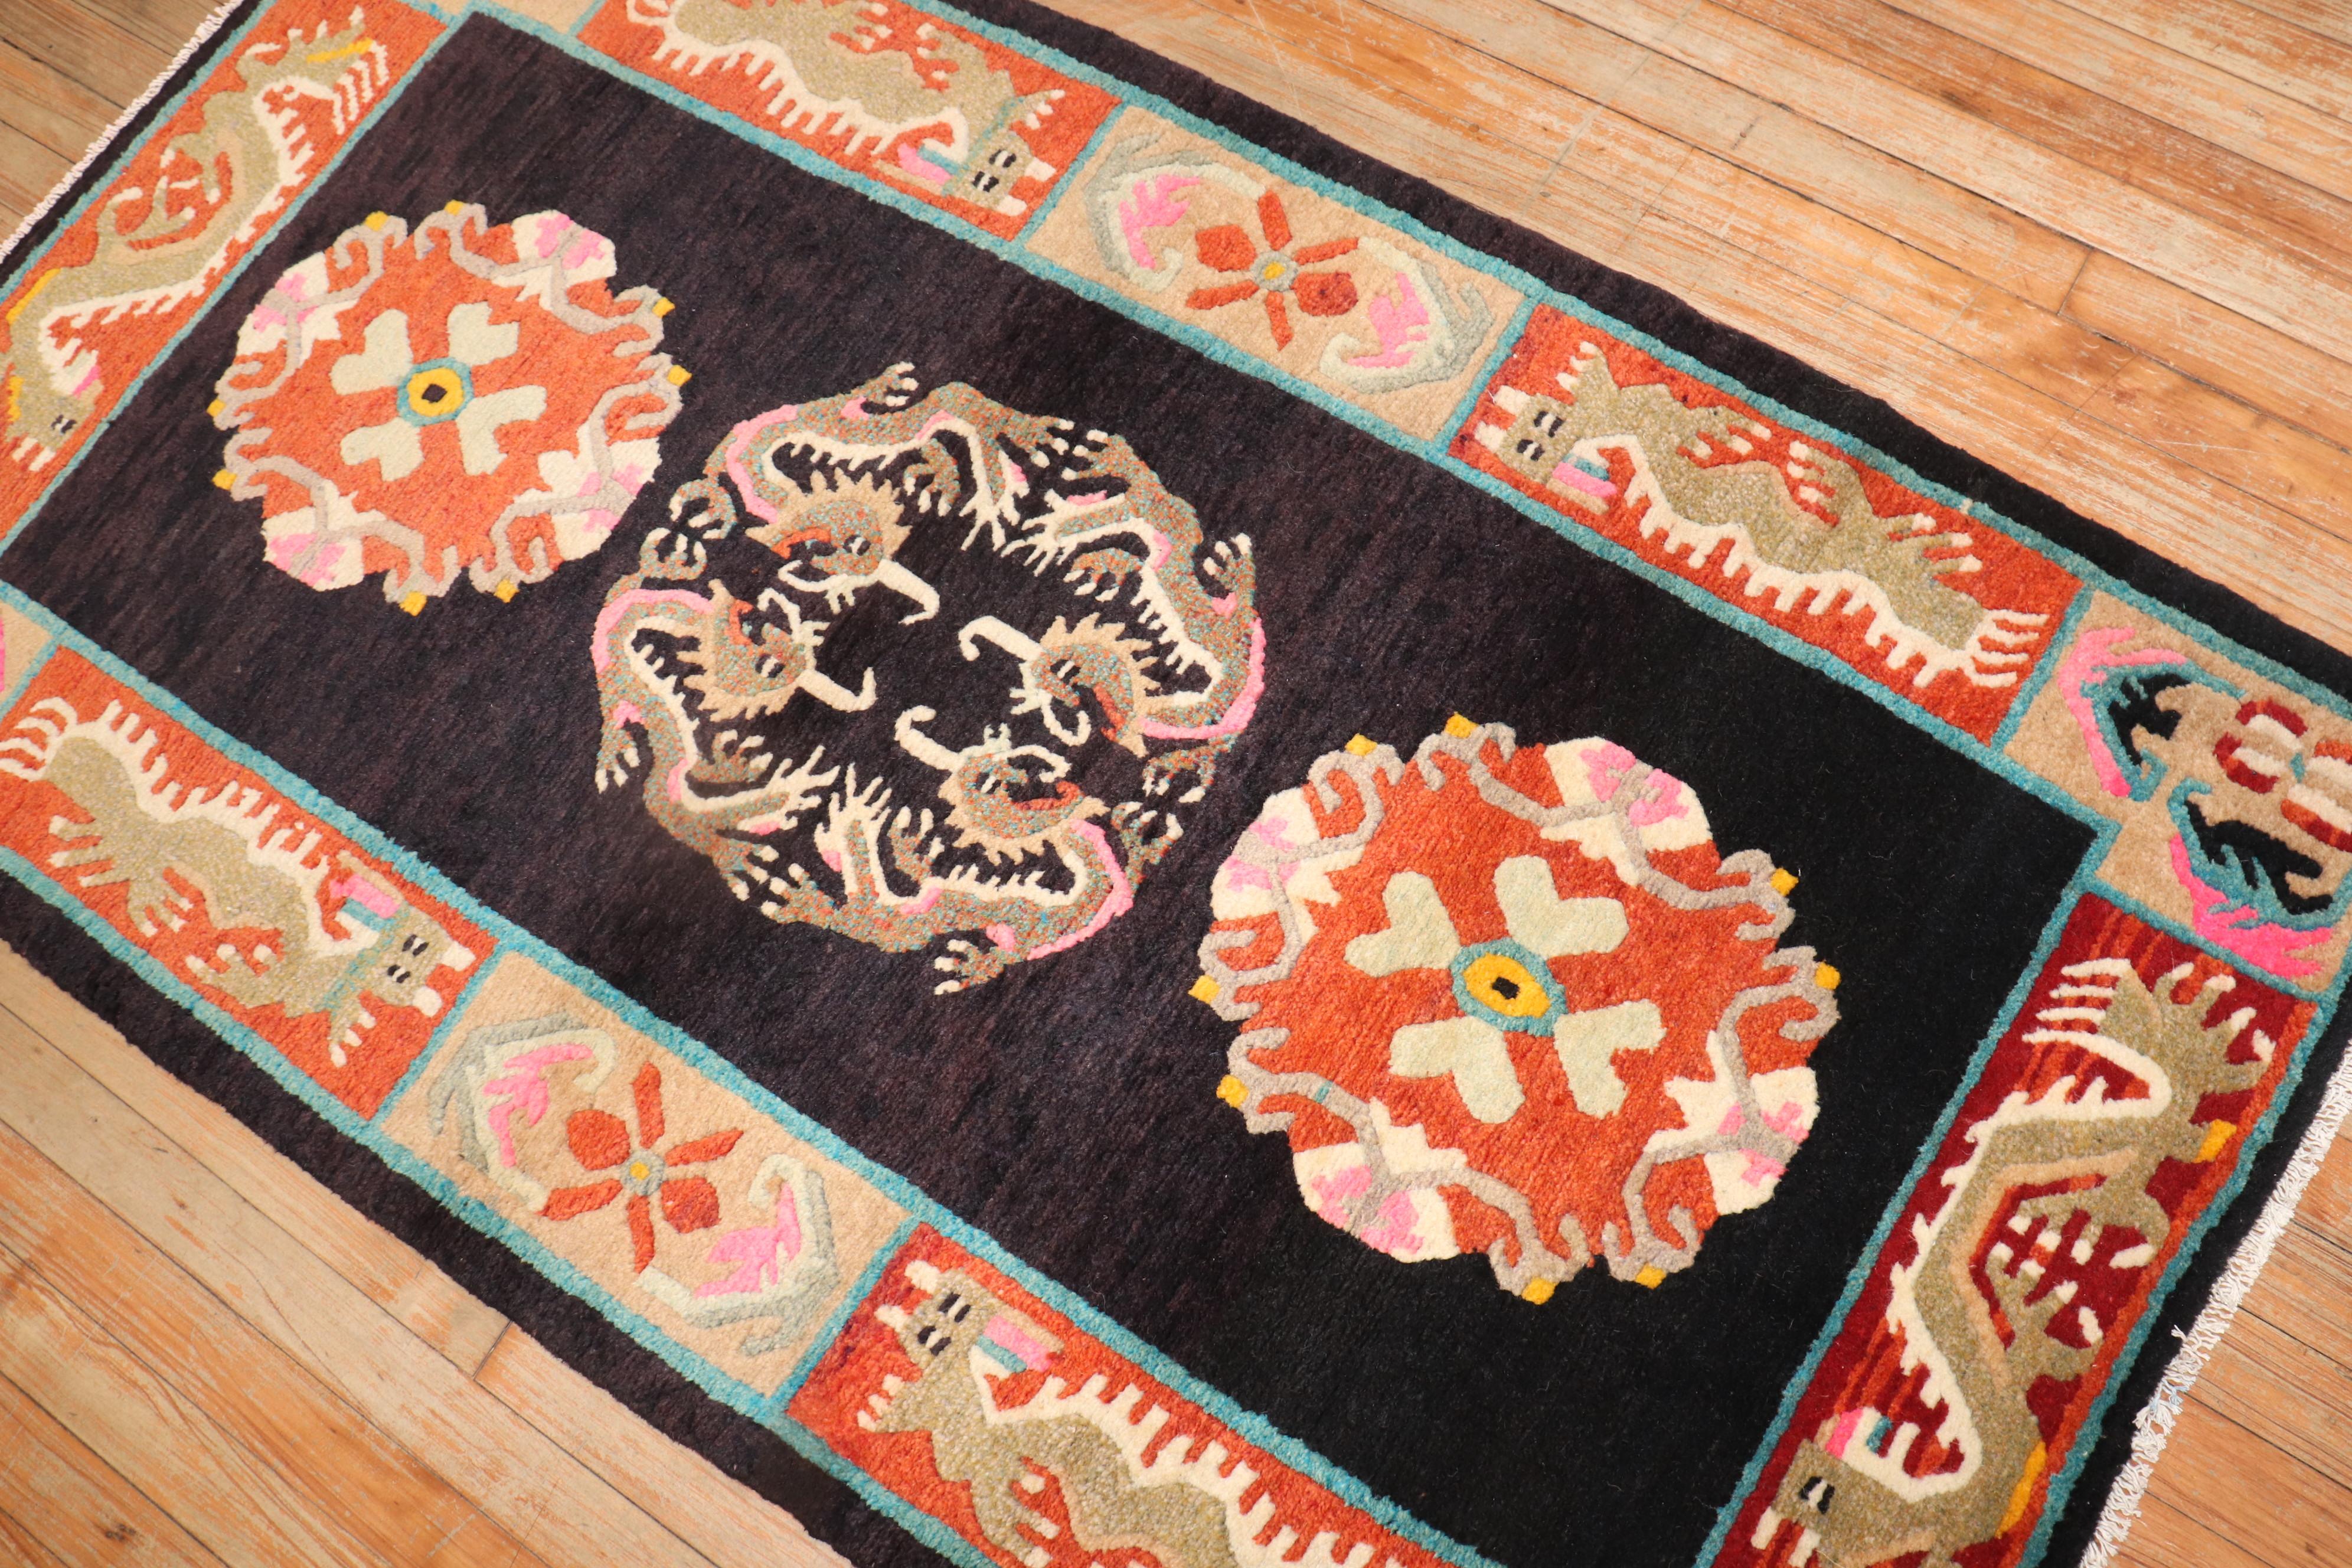 Hand-Woven Colorful Vintage Tibetan Rug For Sale